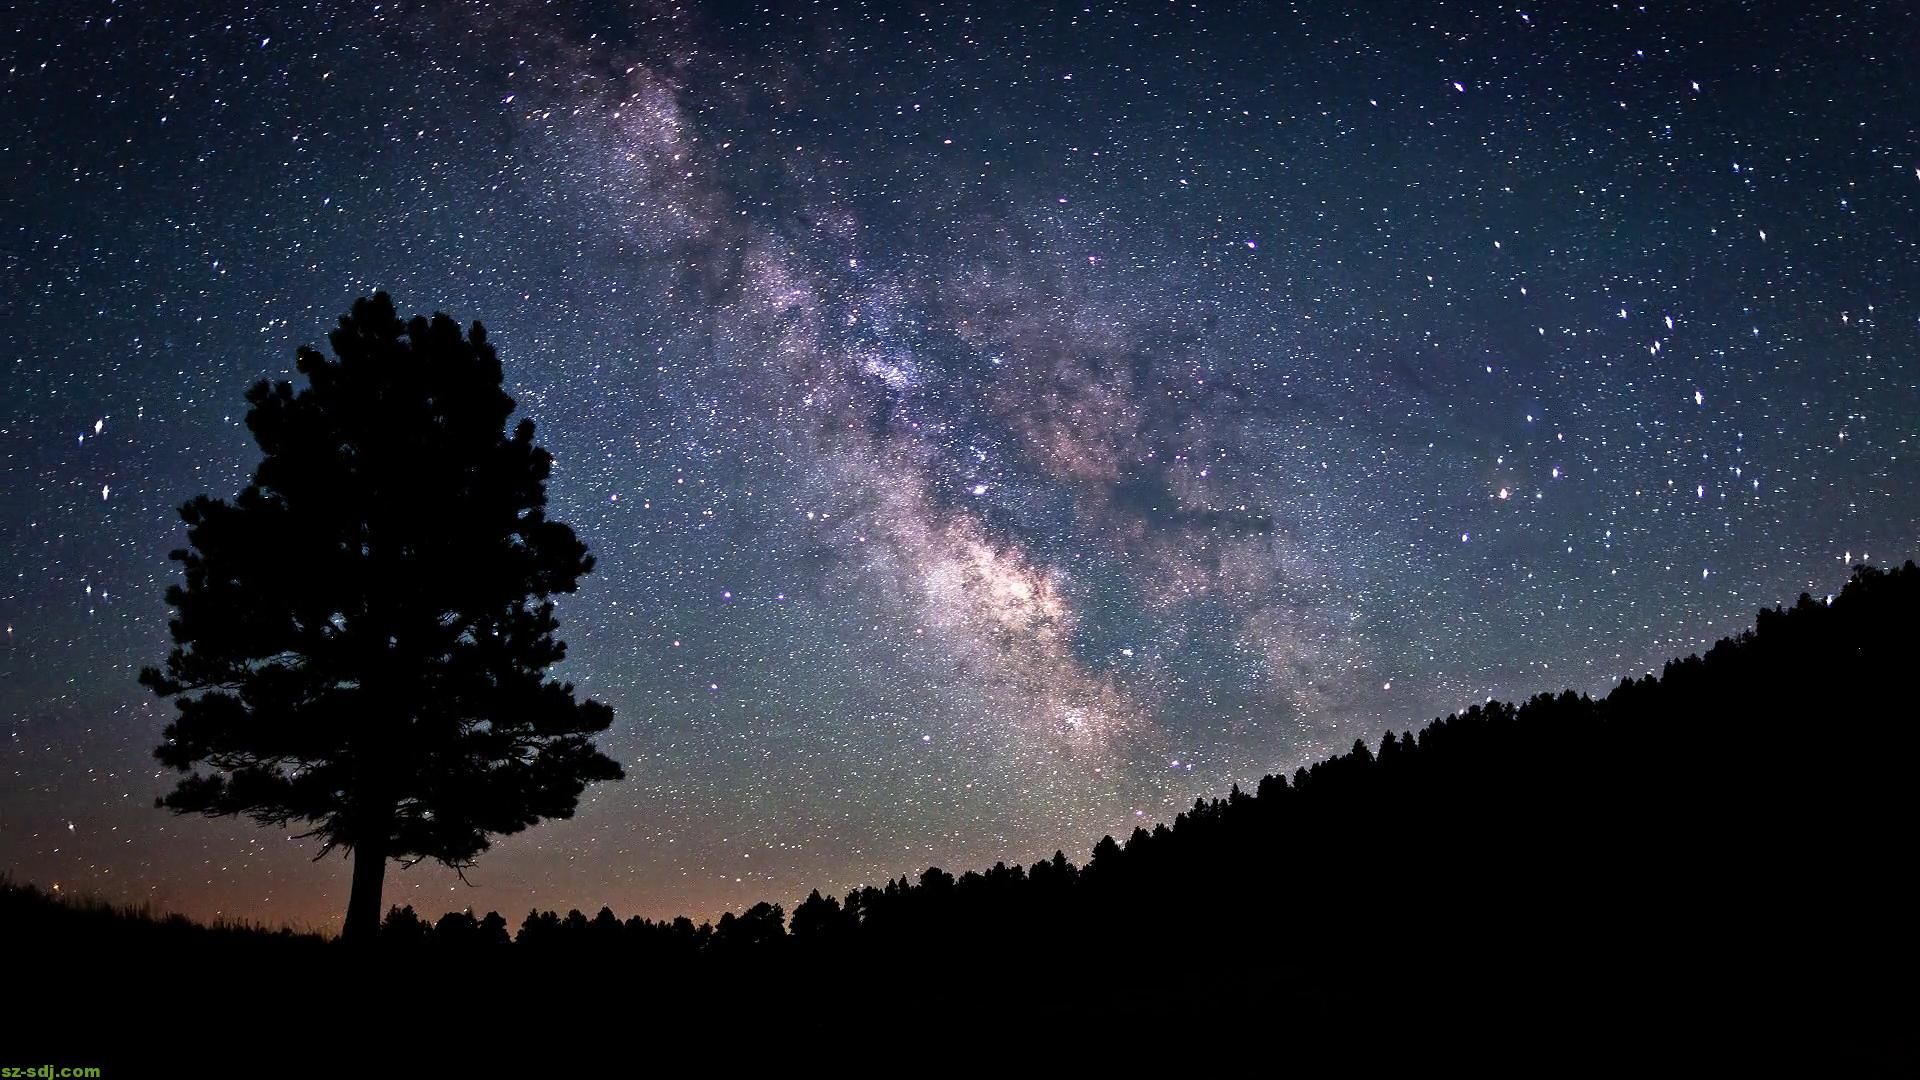 Chinh phục bầu trời đêm với những bức ảnh tuyệt đẹp. Tận dụng sự tĩnh lặng của đêm để thư giãn và đắm mình trong không gian xanh.